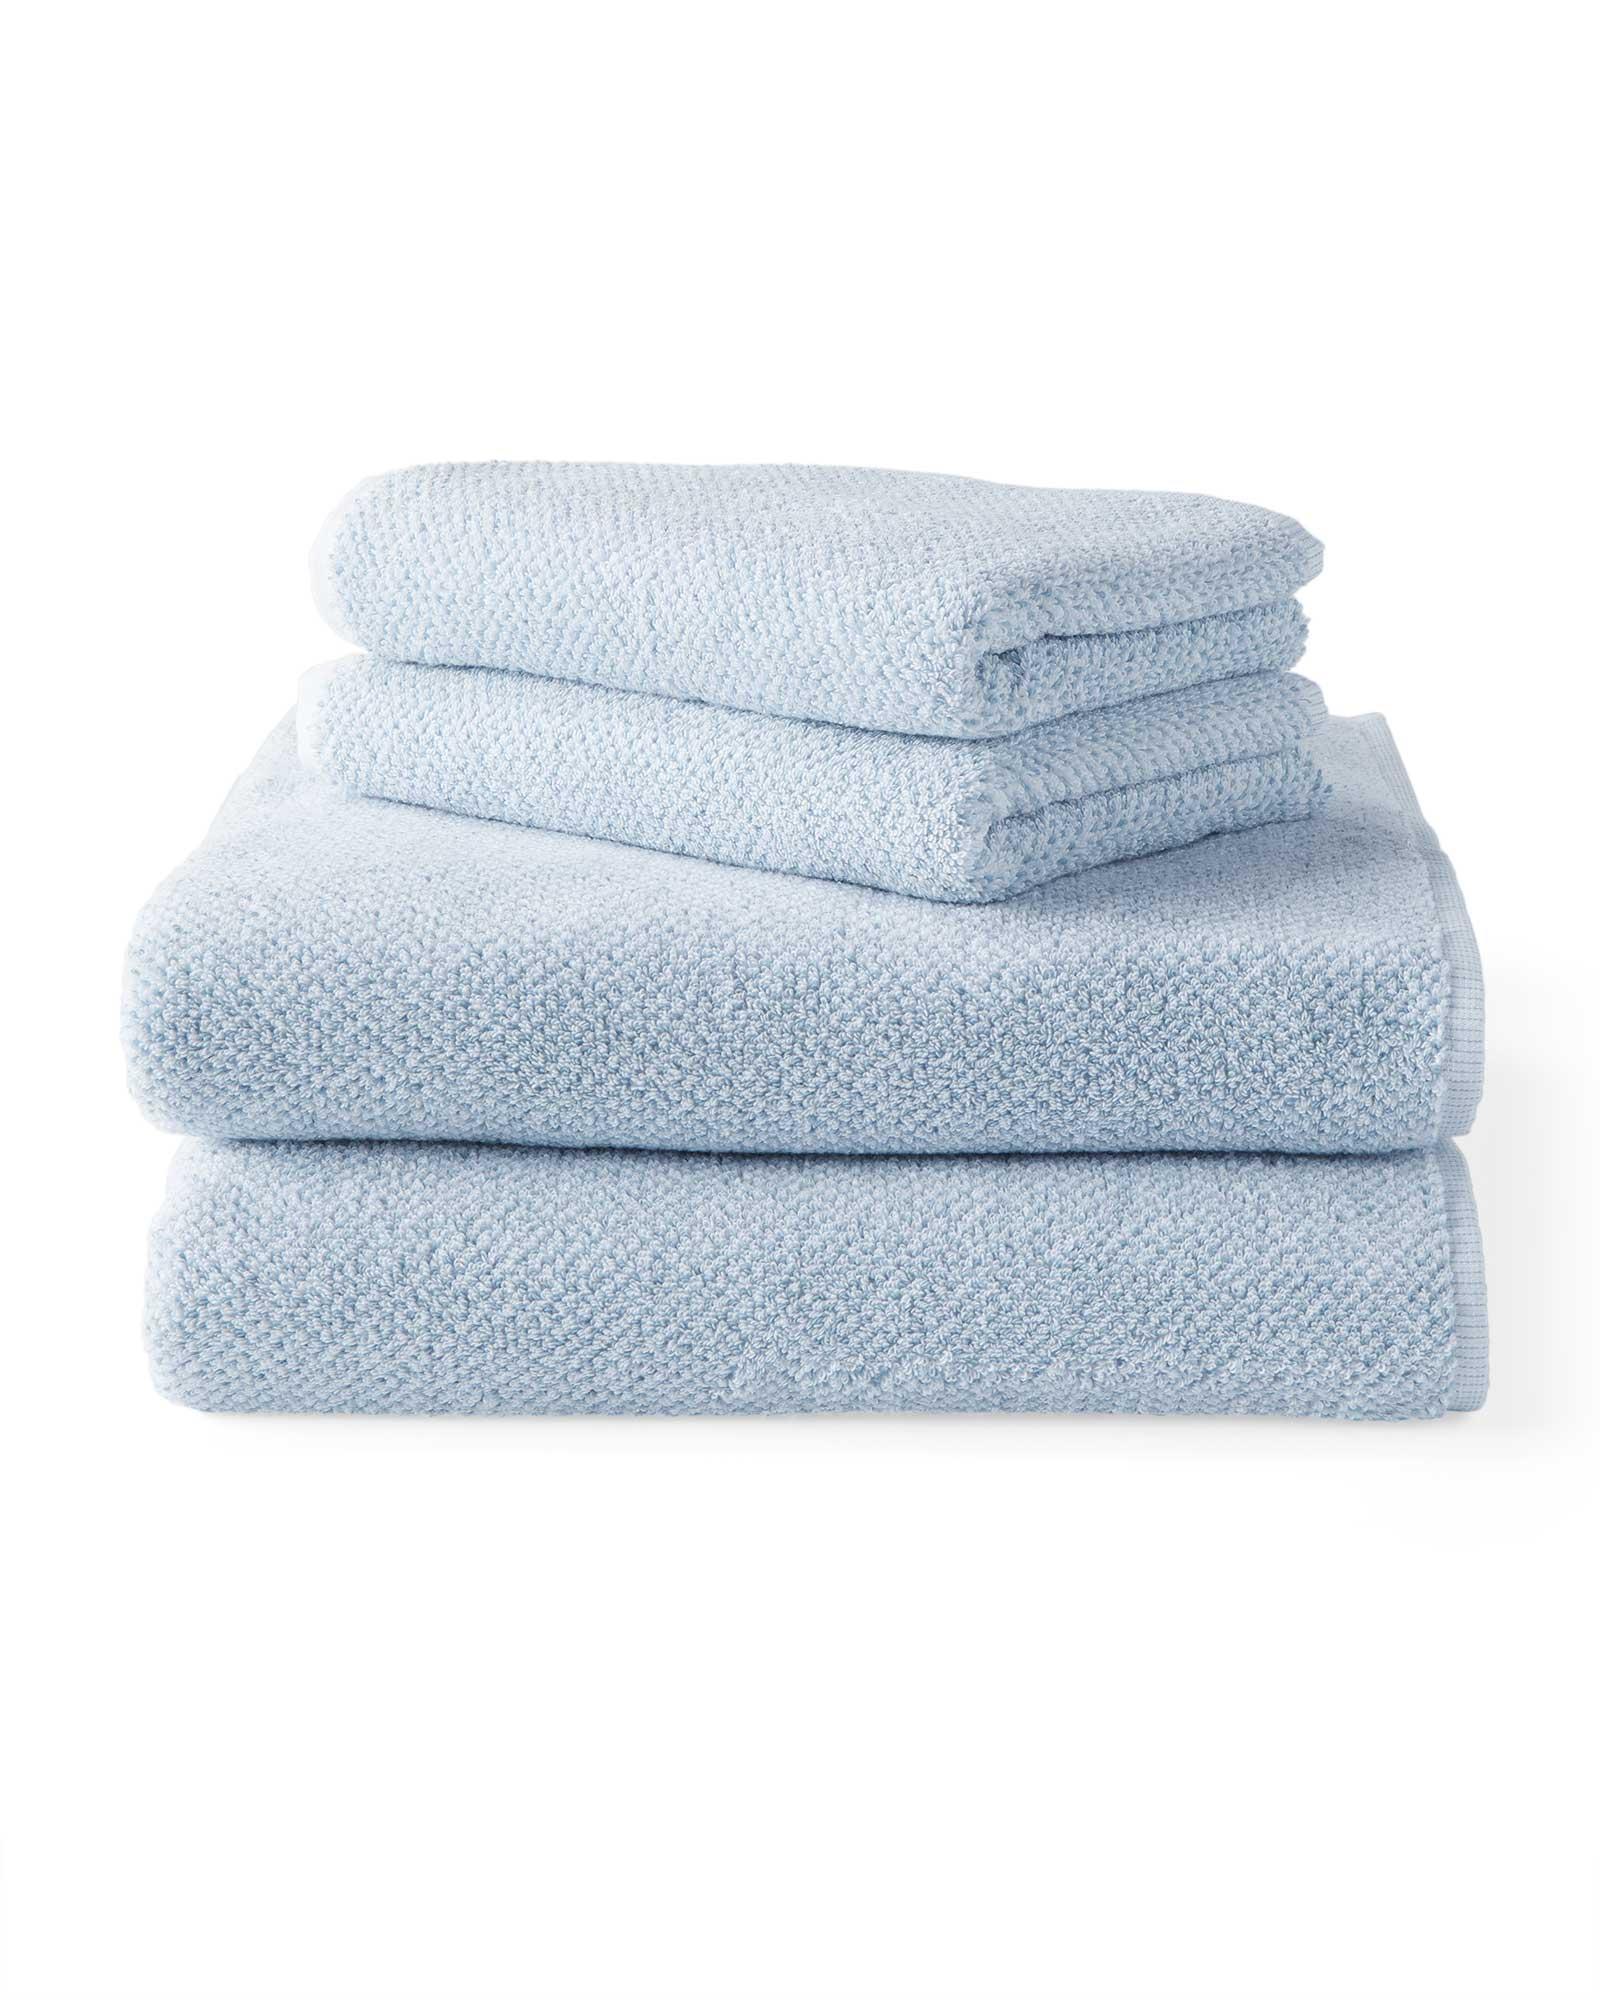 Polo Towel | Ralph Lauren